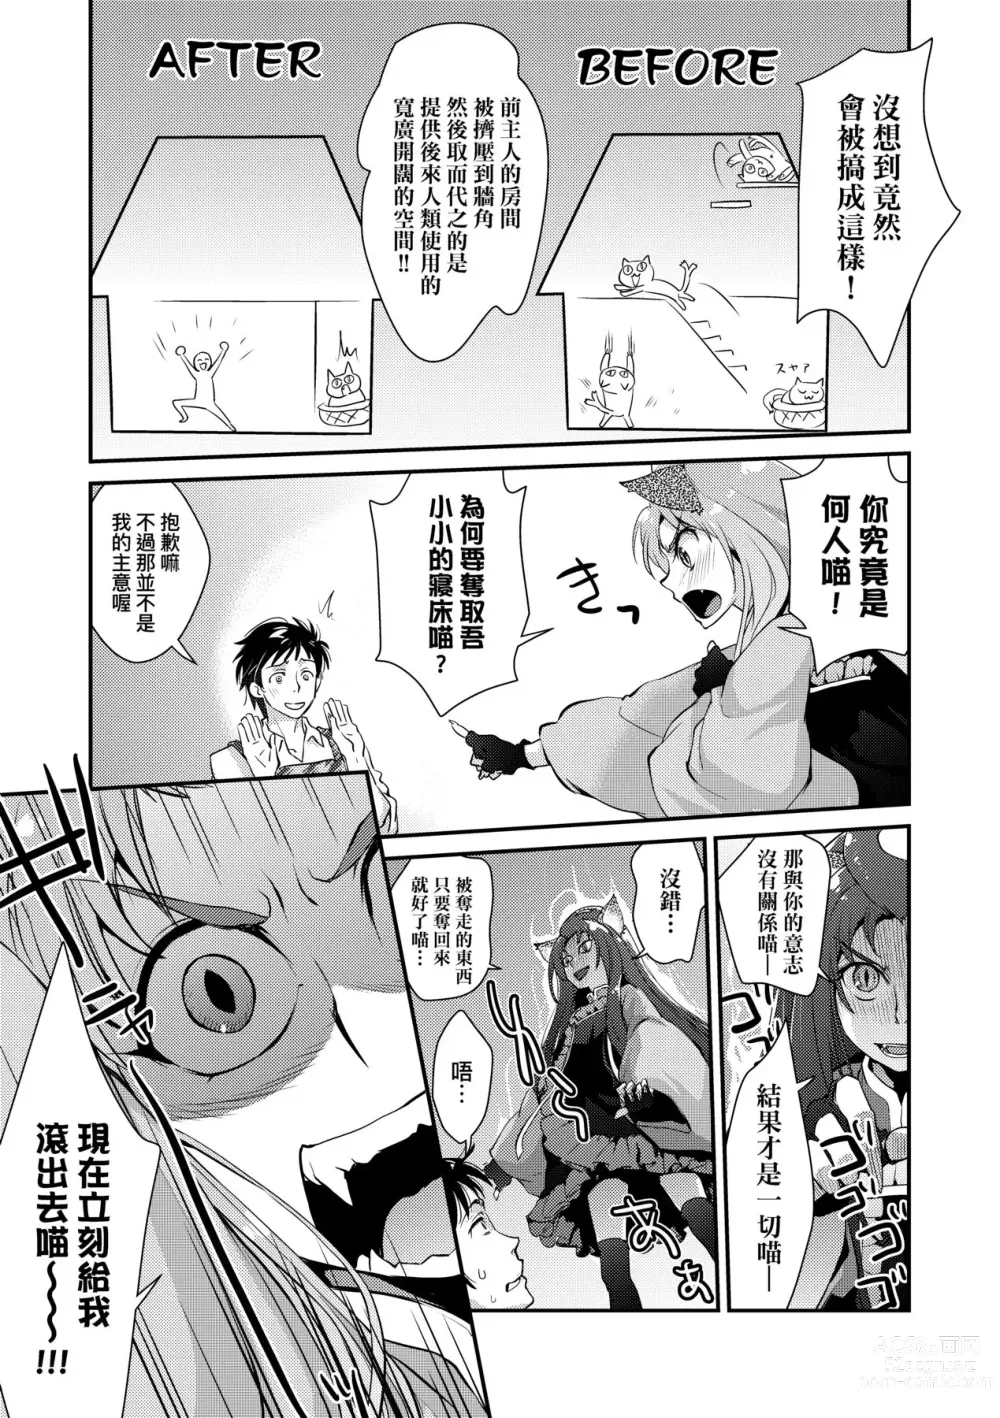 Page 194 of manga Echiechi JK Houimou (decensored)